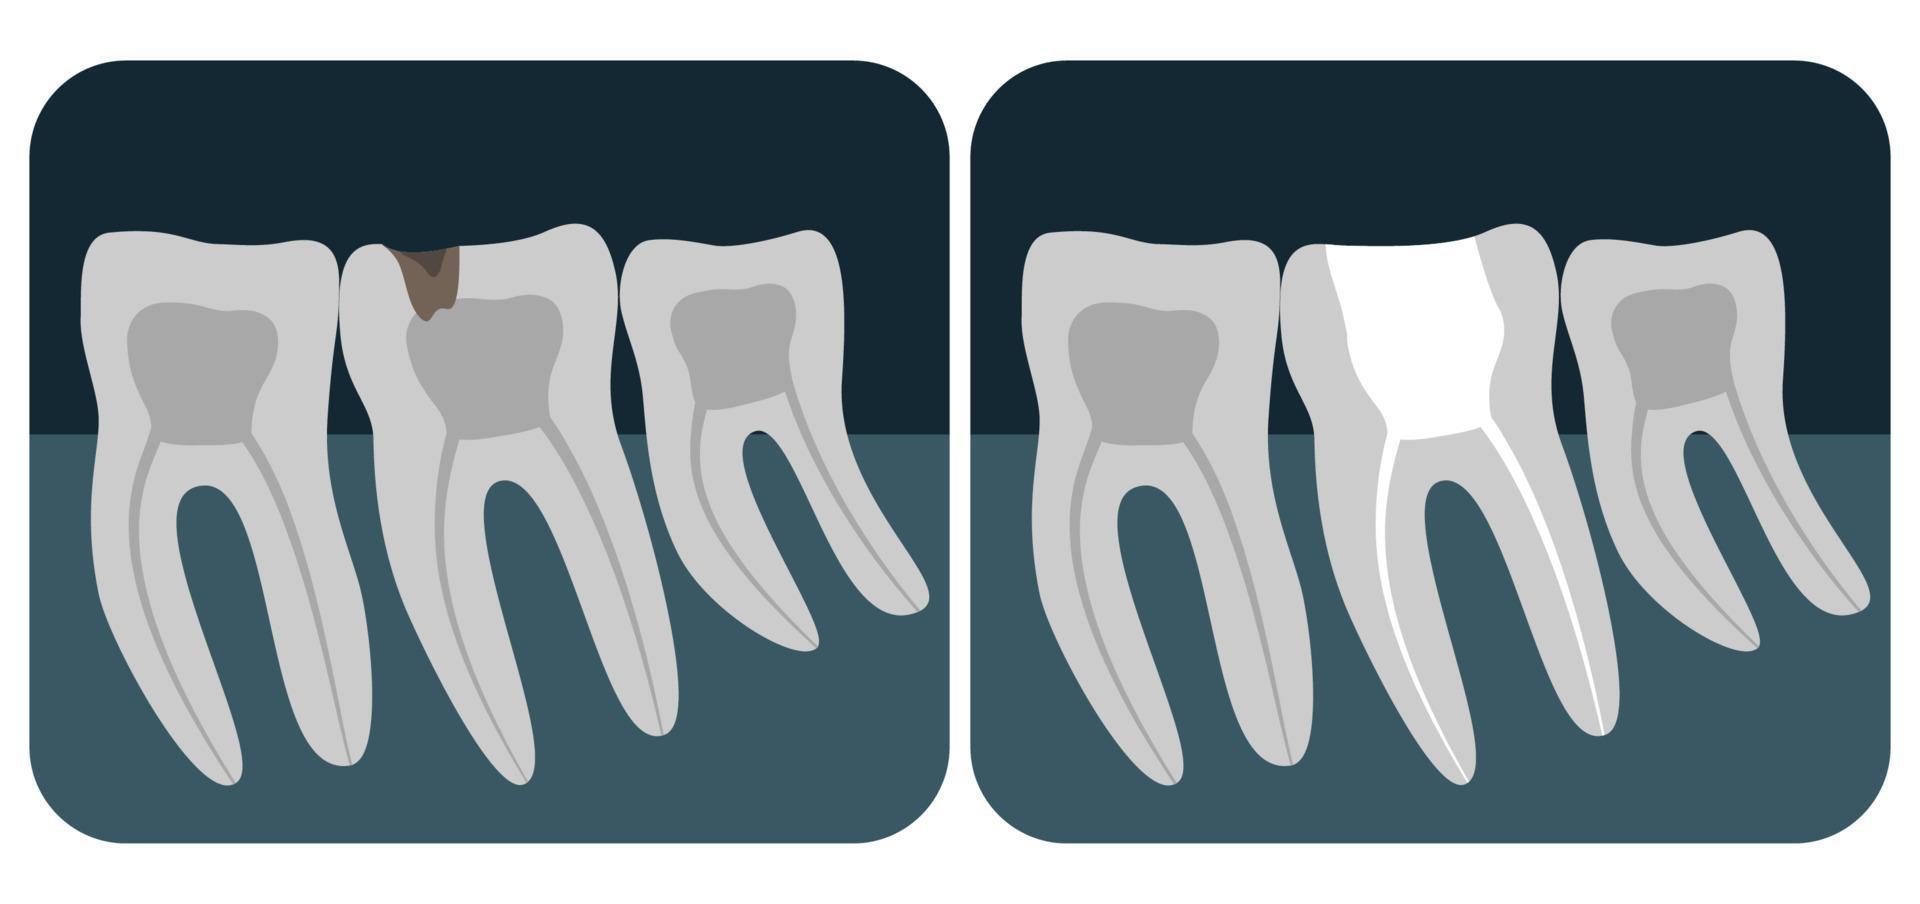 radiografía de dientes humanos. tres molares sanos en una radiografía. ilustración vectorial vector